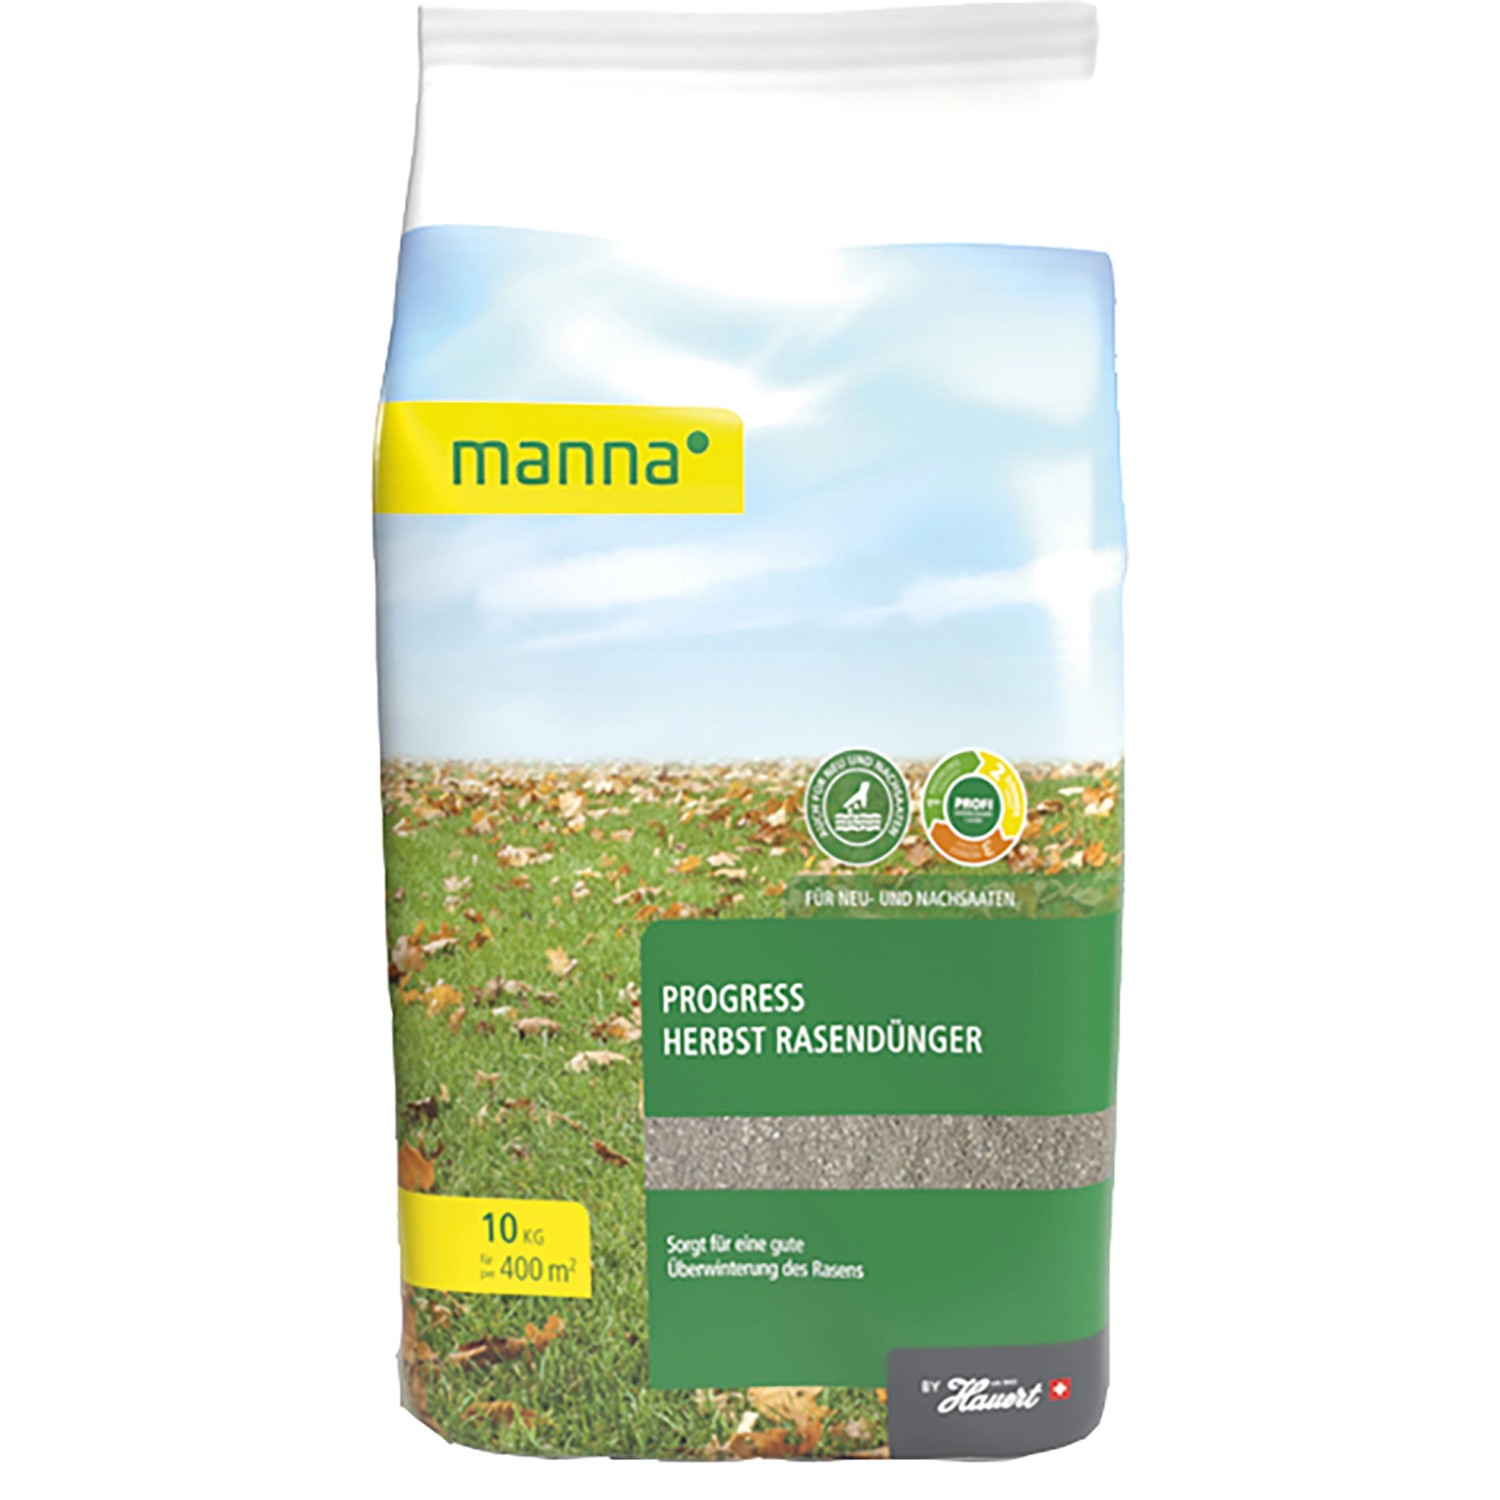 Manna Progress Herbst Rasendünger 10 kg von Manna